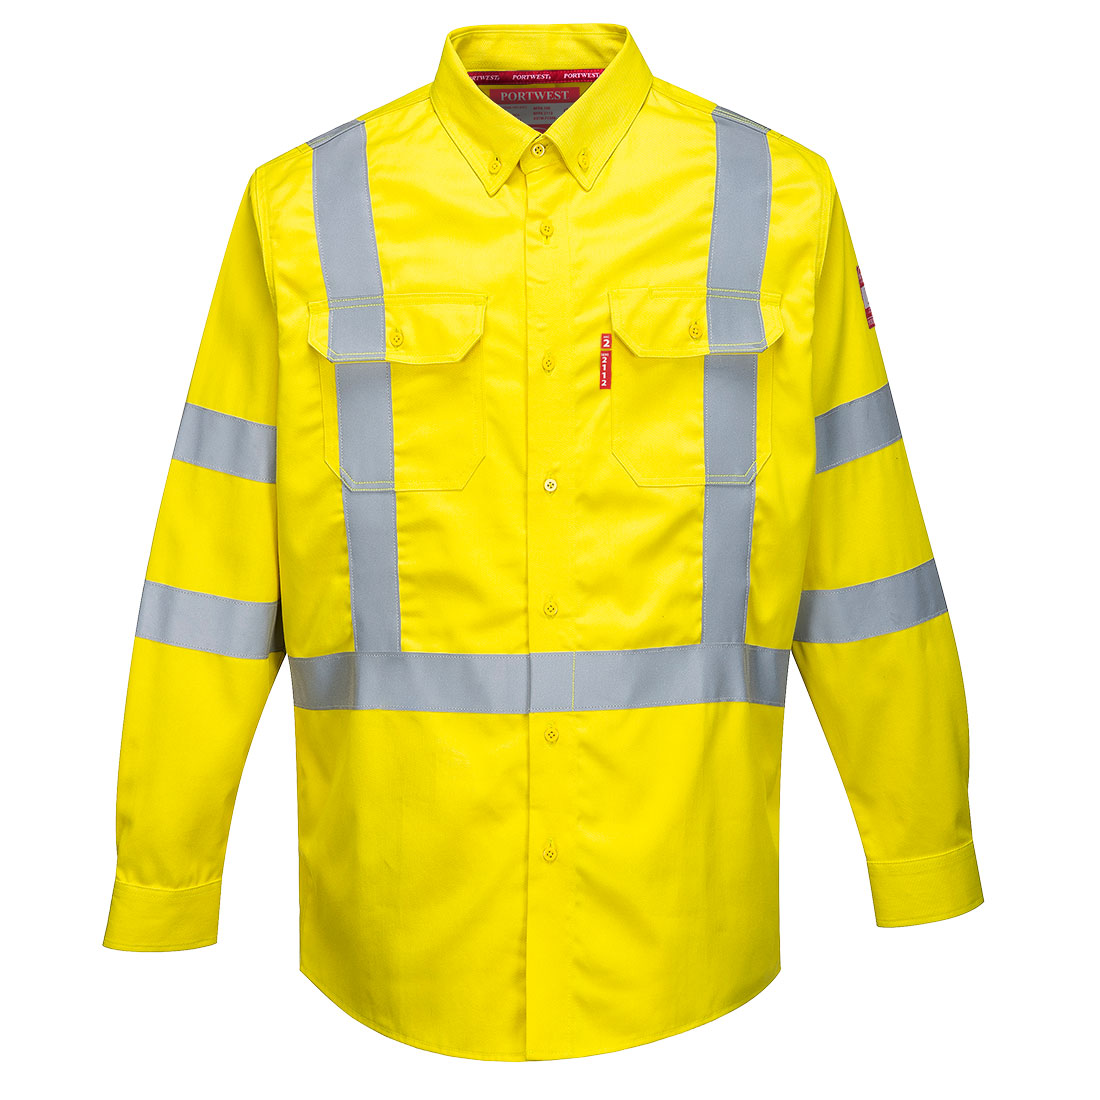 Bizflame 88/12 flammhemendes FR Warnschutz Hemd FR95 in Gelb, Größe 3XL von Portwest